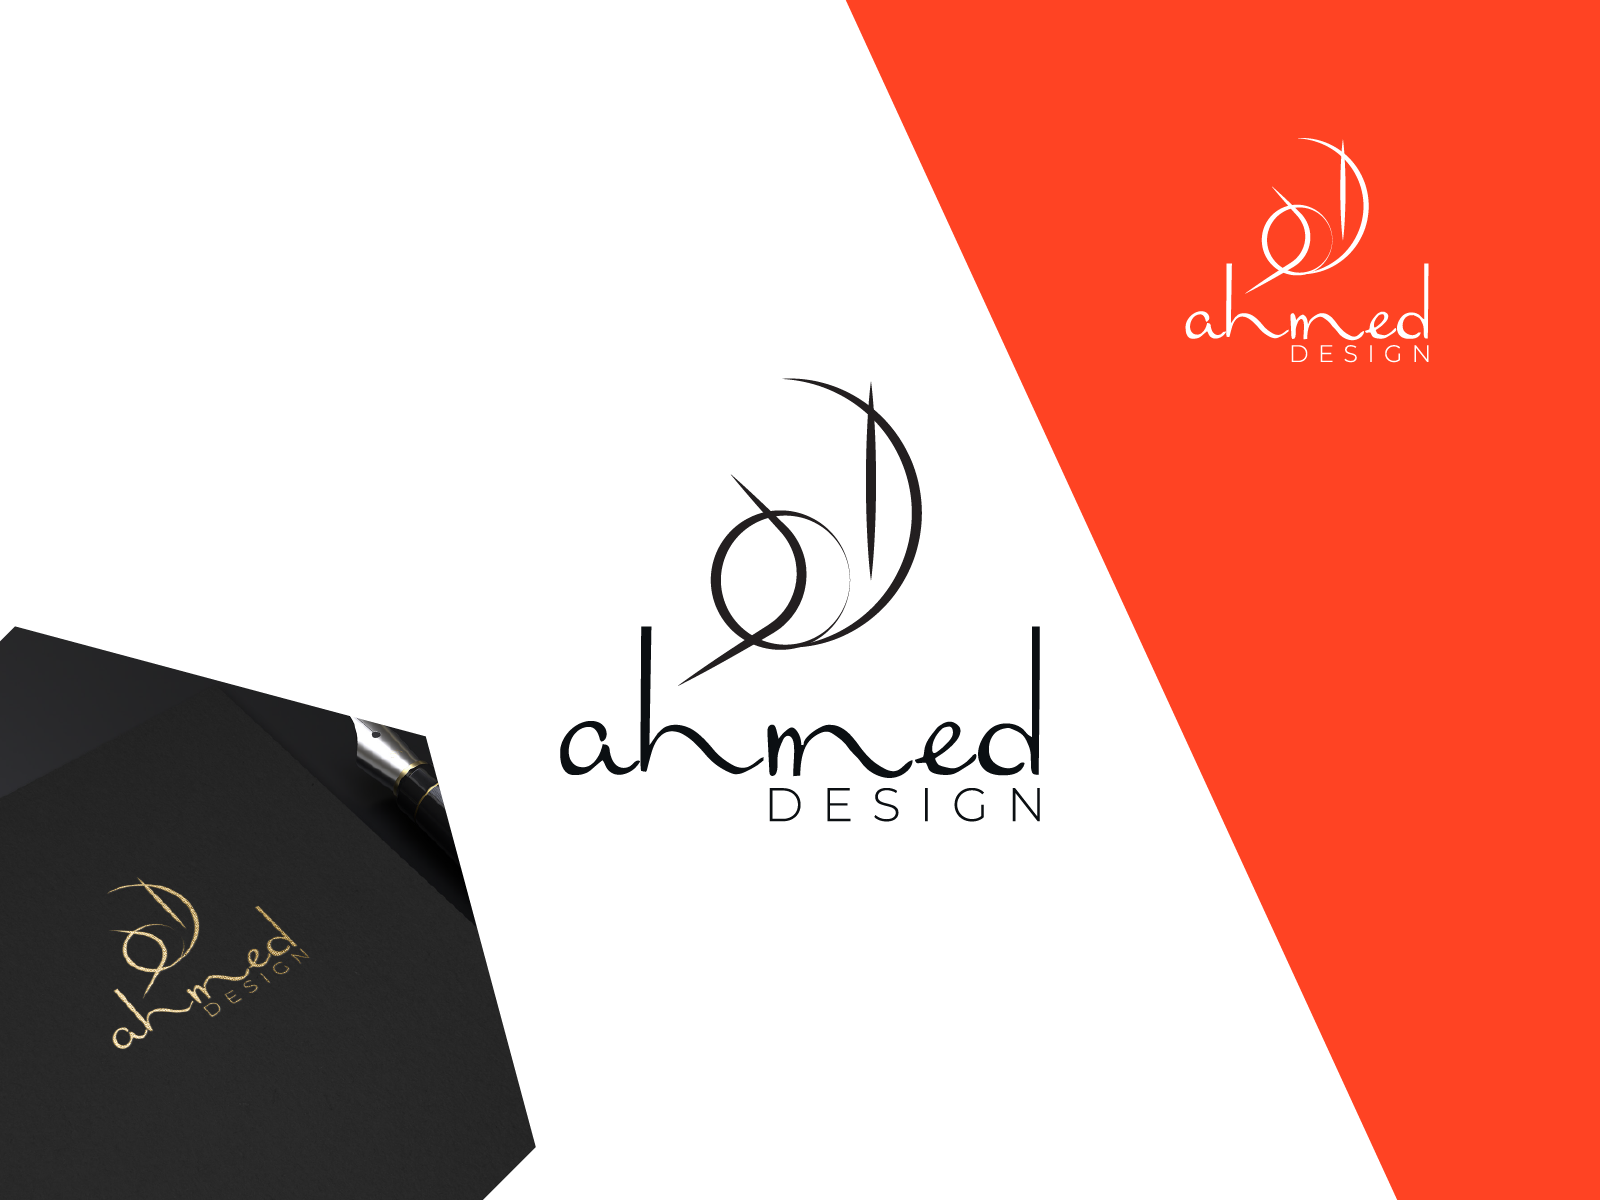 أحمد.. لمسة أخيرة ahmed in arabic.. final touch #designbym… | Flickr